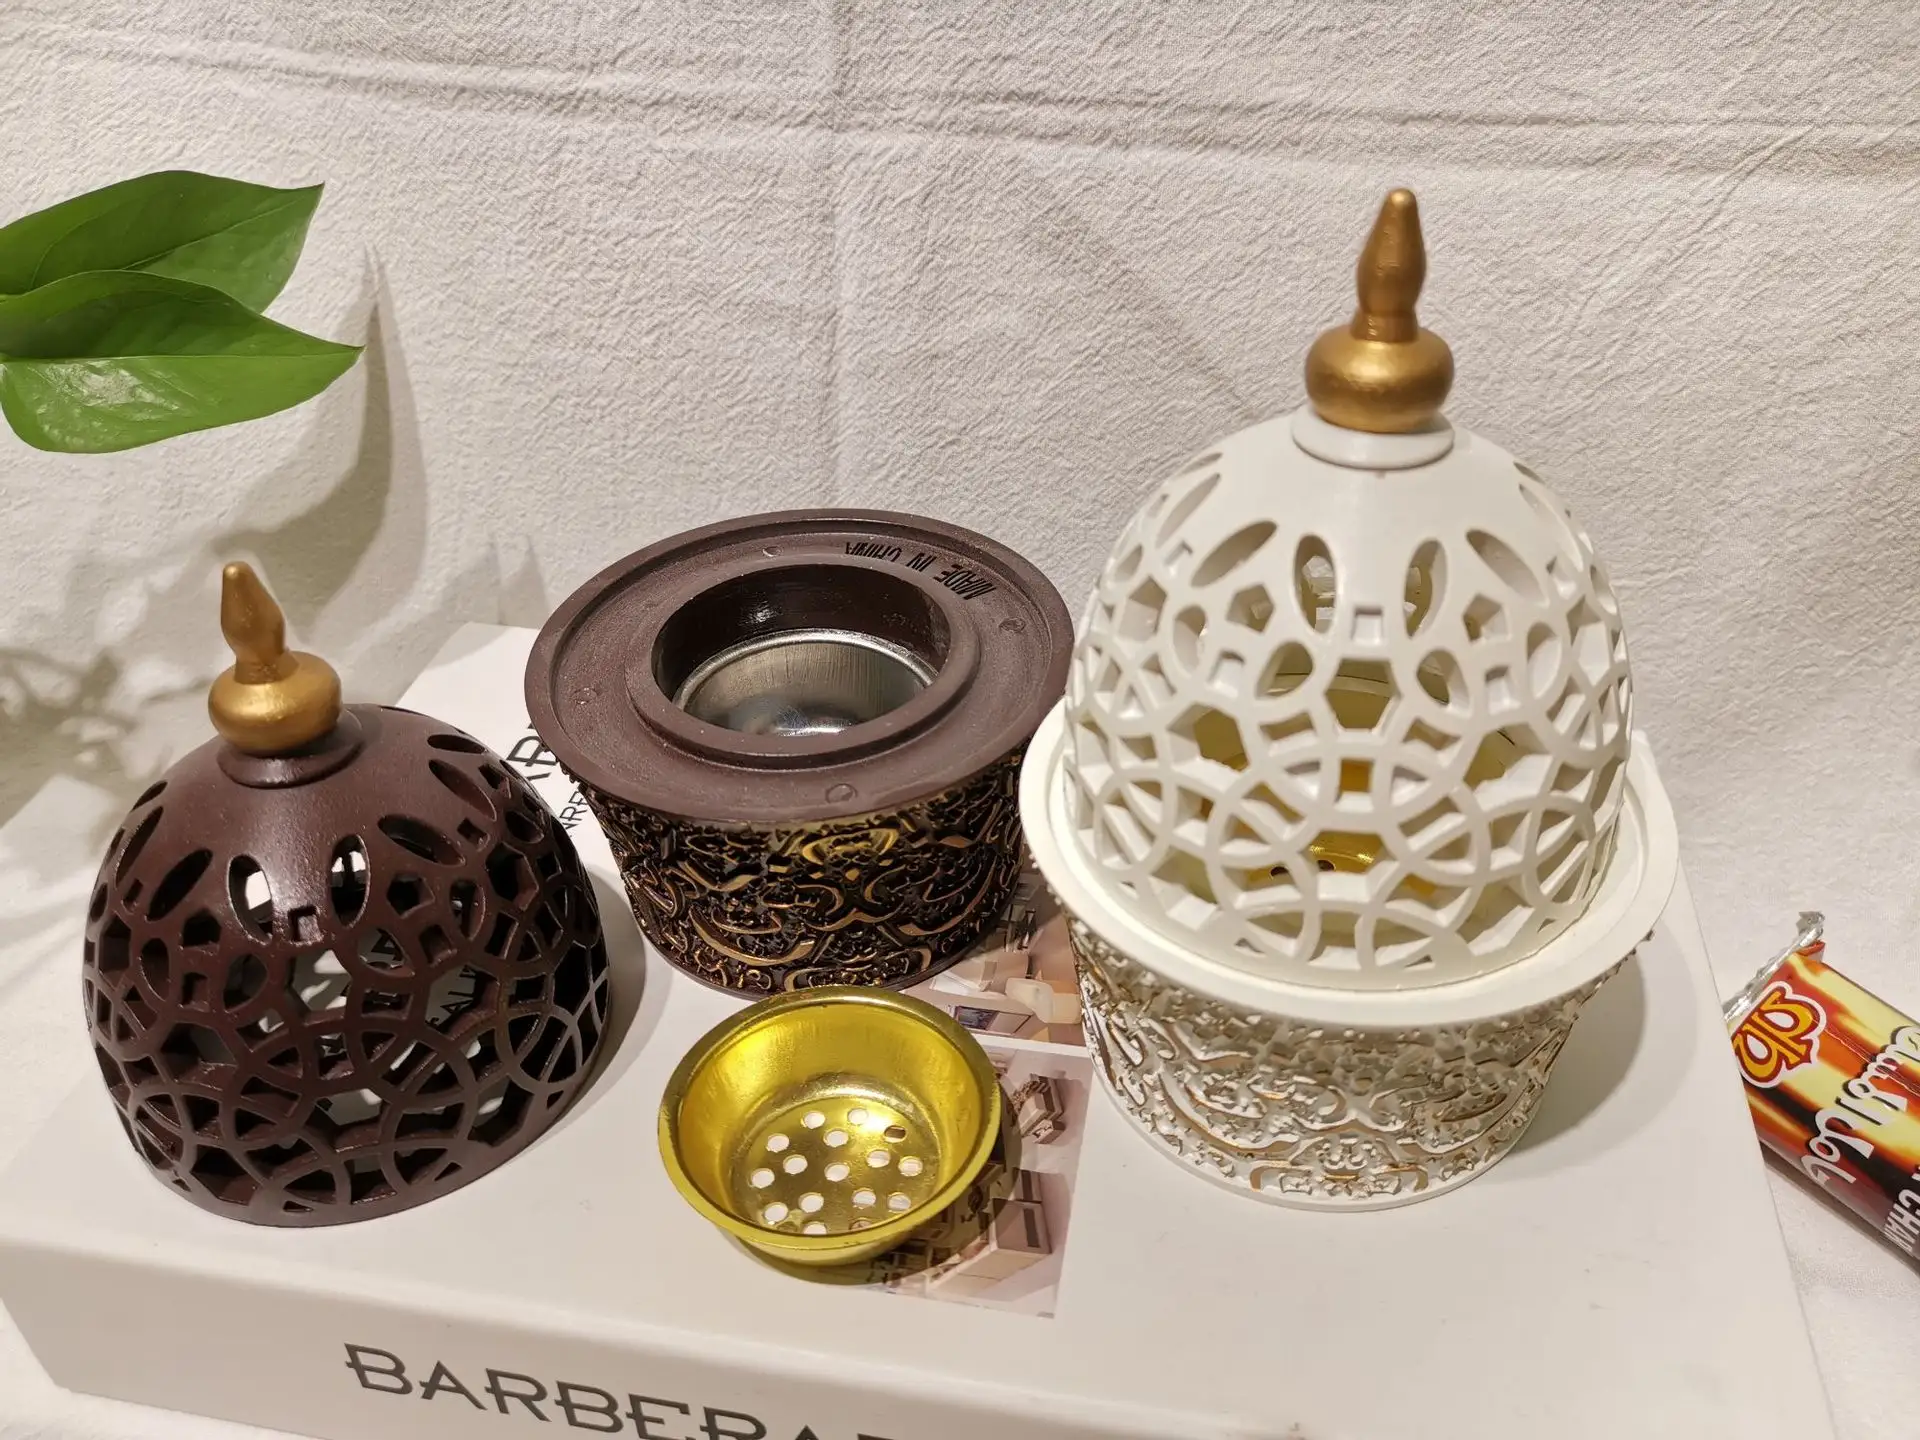 Brûleur d'encens fermé en résine de style calligraphie de luxe décor de bureau à domicile brûleur d'encens arabe Bakhoor (Mabkhara)